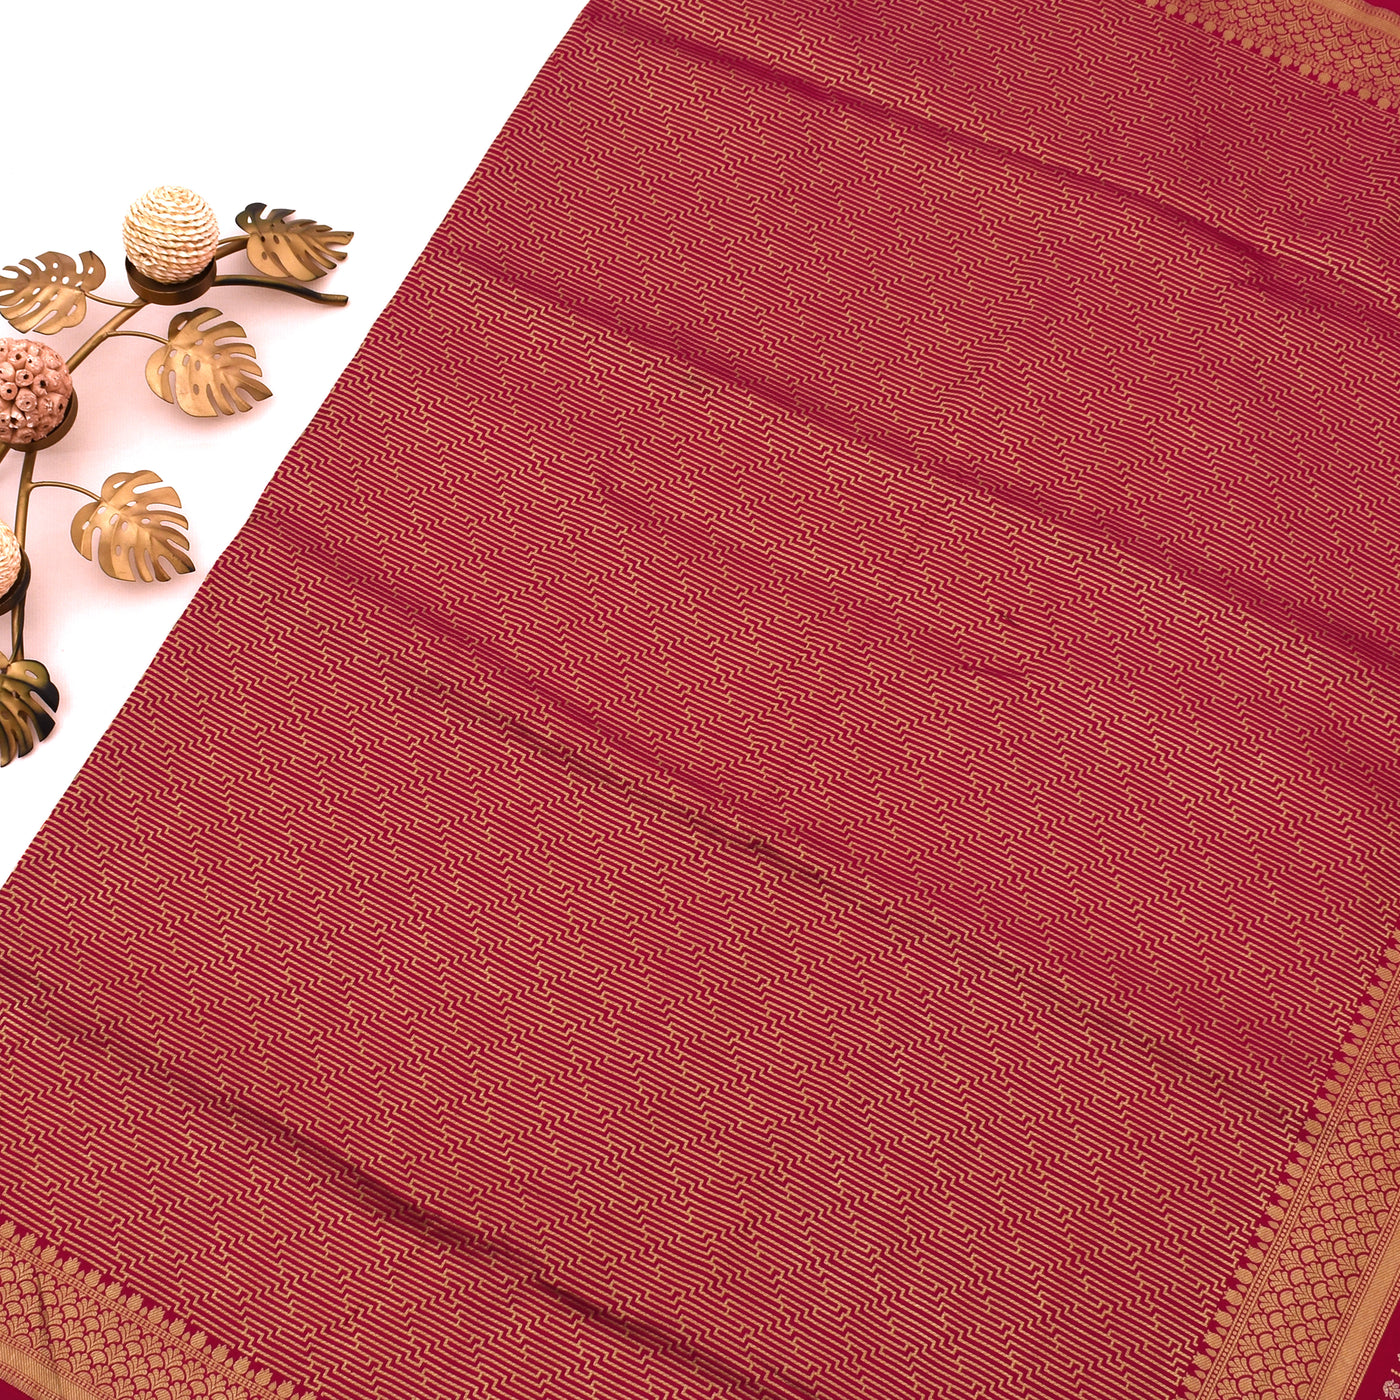 Red Banarasi Silk Saree with Zari Stripes Design